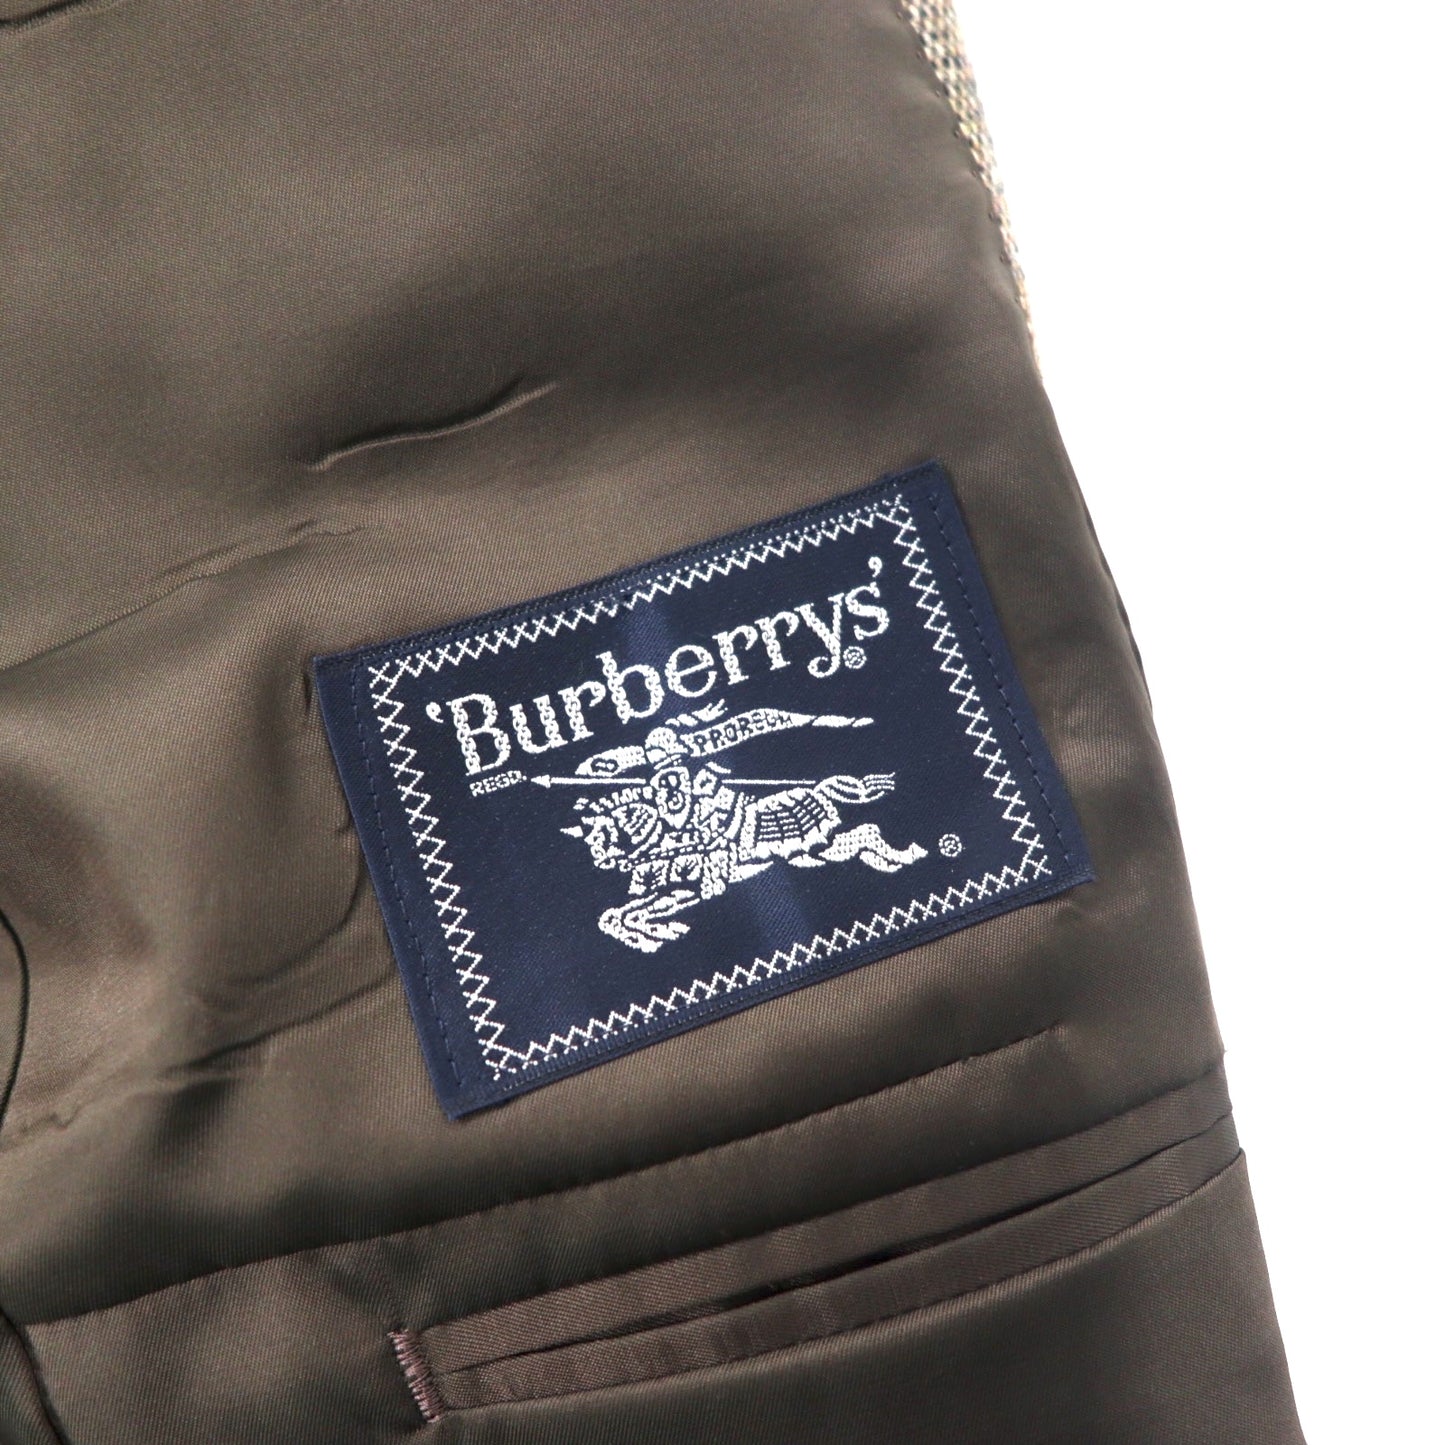 Burberrys オールド ツイード 2B テーラードジャケット 102-96-175 BB6 ブラウン ウール シルク混 飾りボタン 日本製